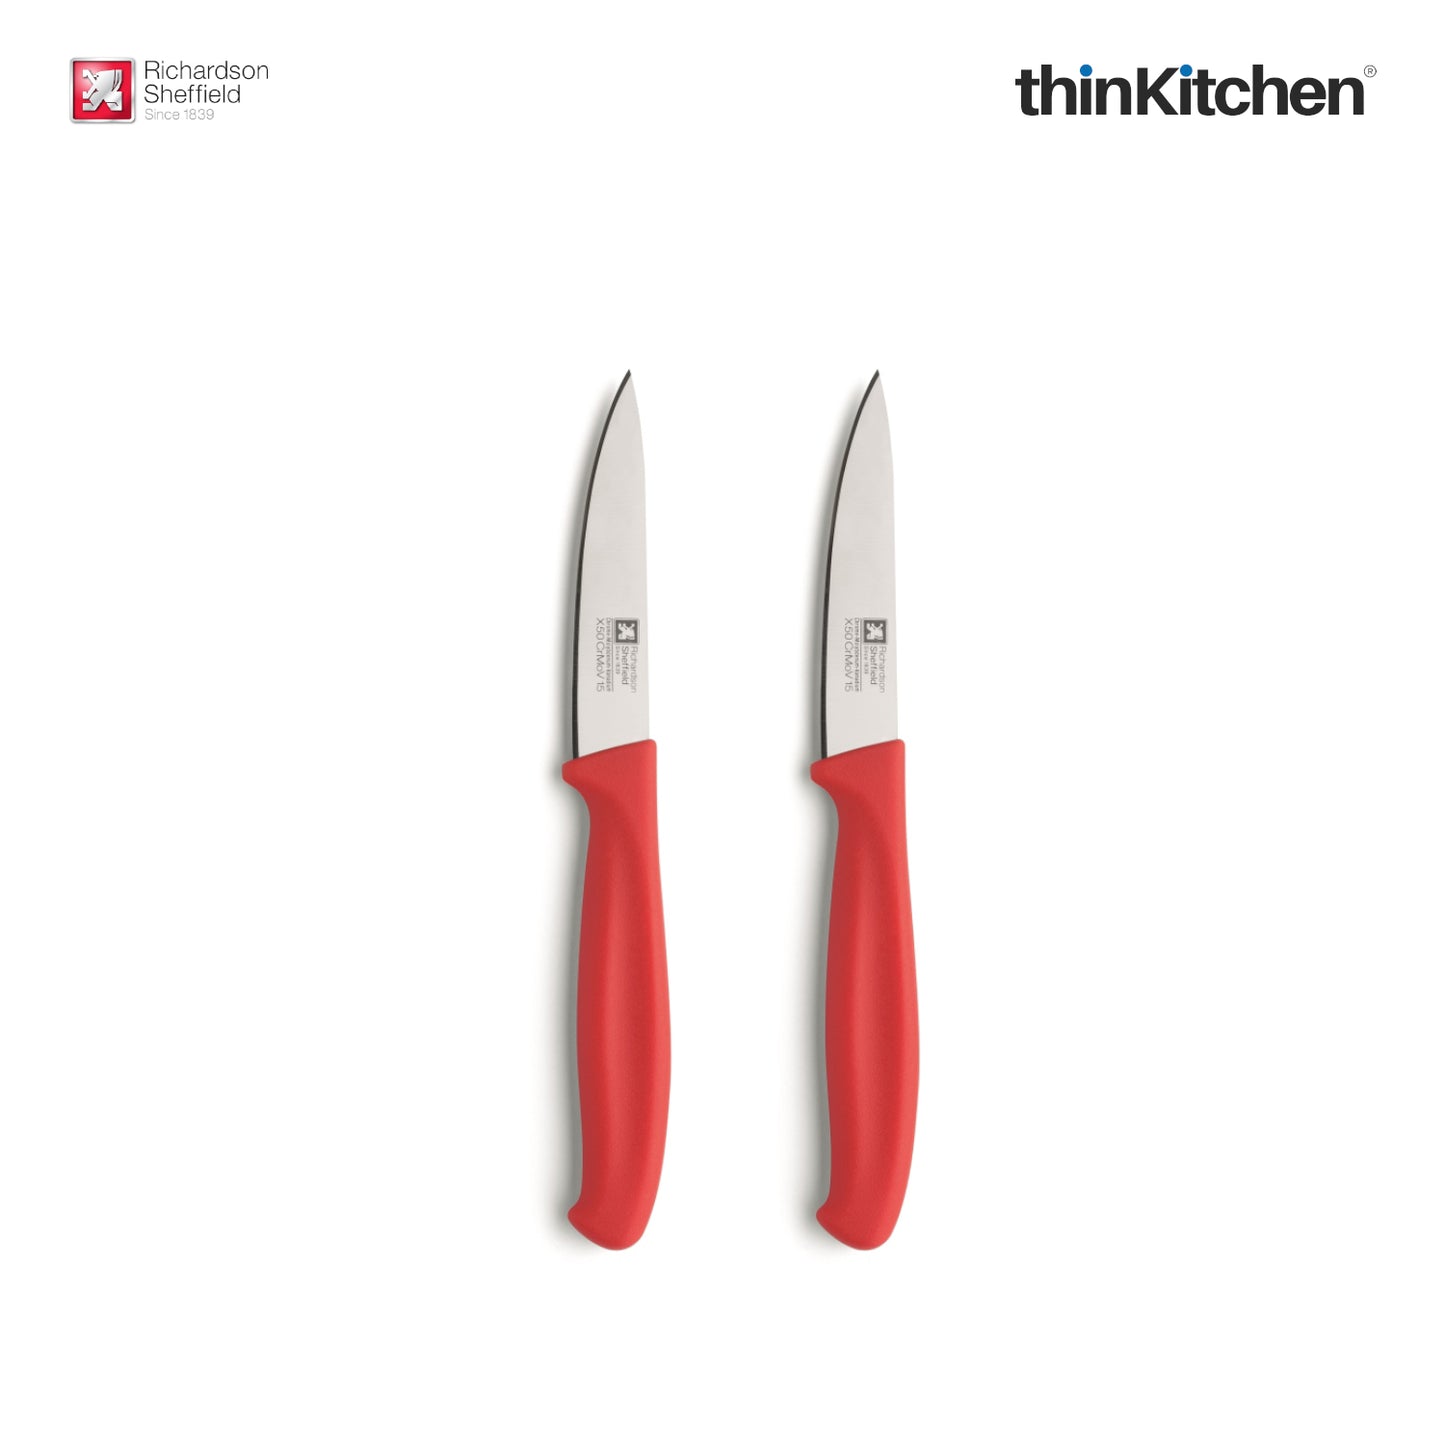 Richardson Sheffield Kitchen Essentials Paring Knife 2 Pieces